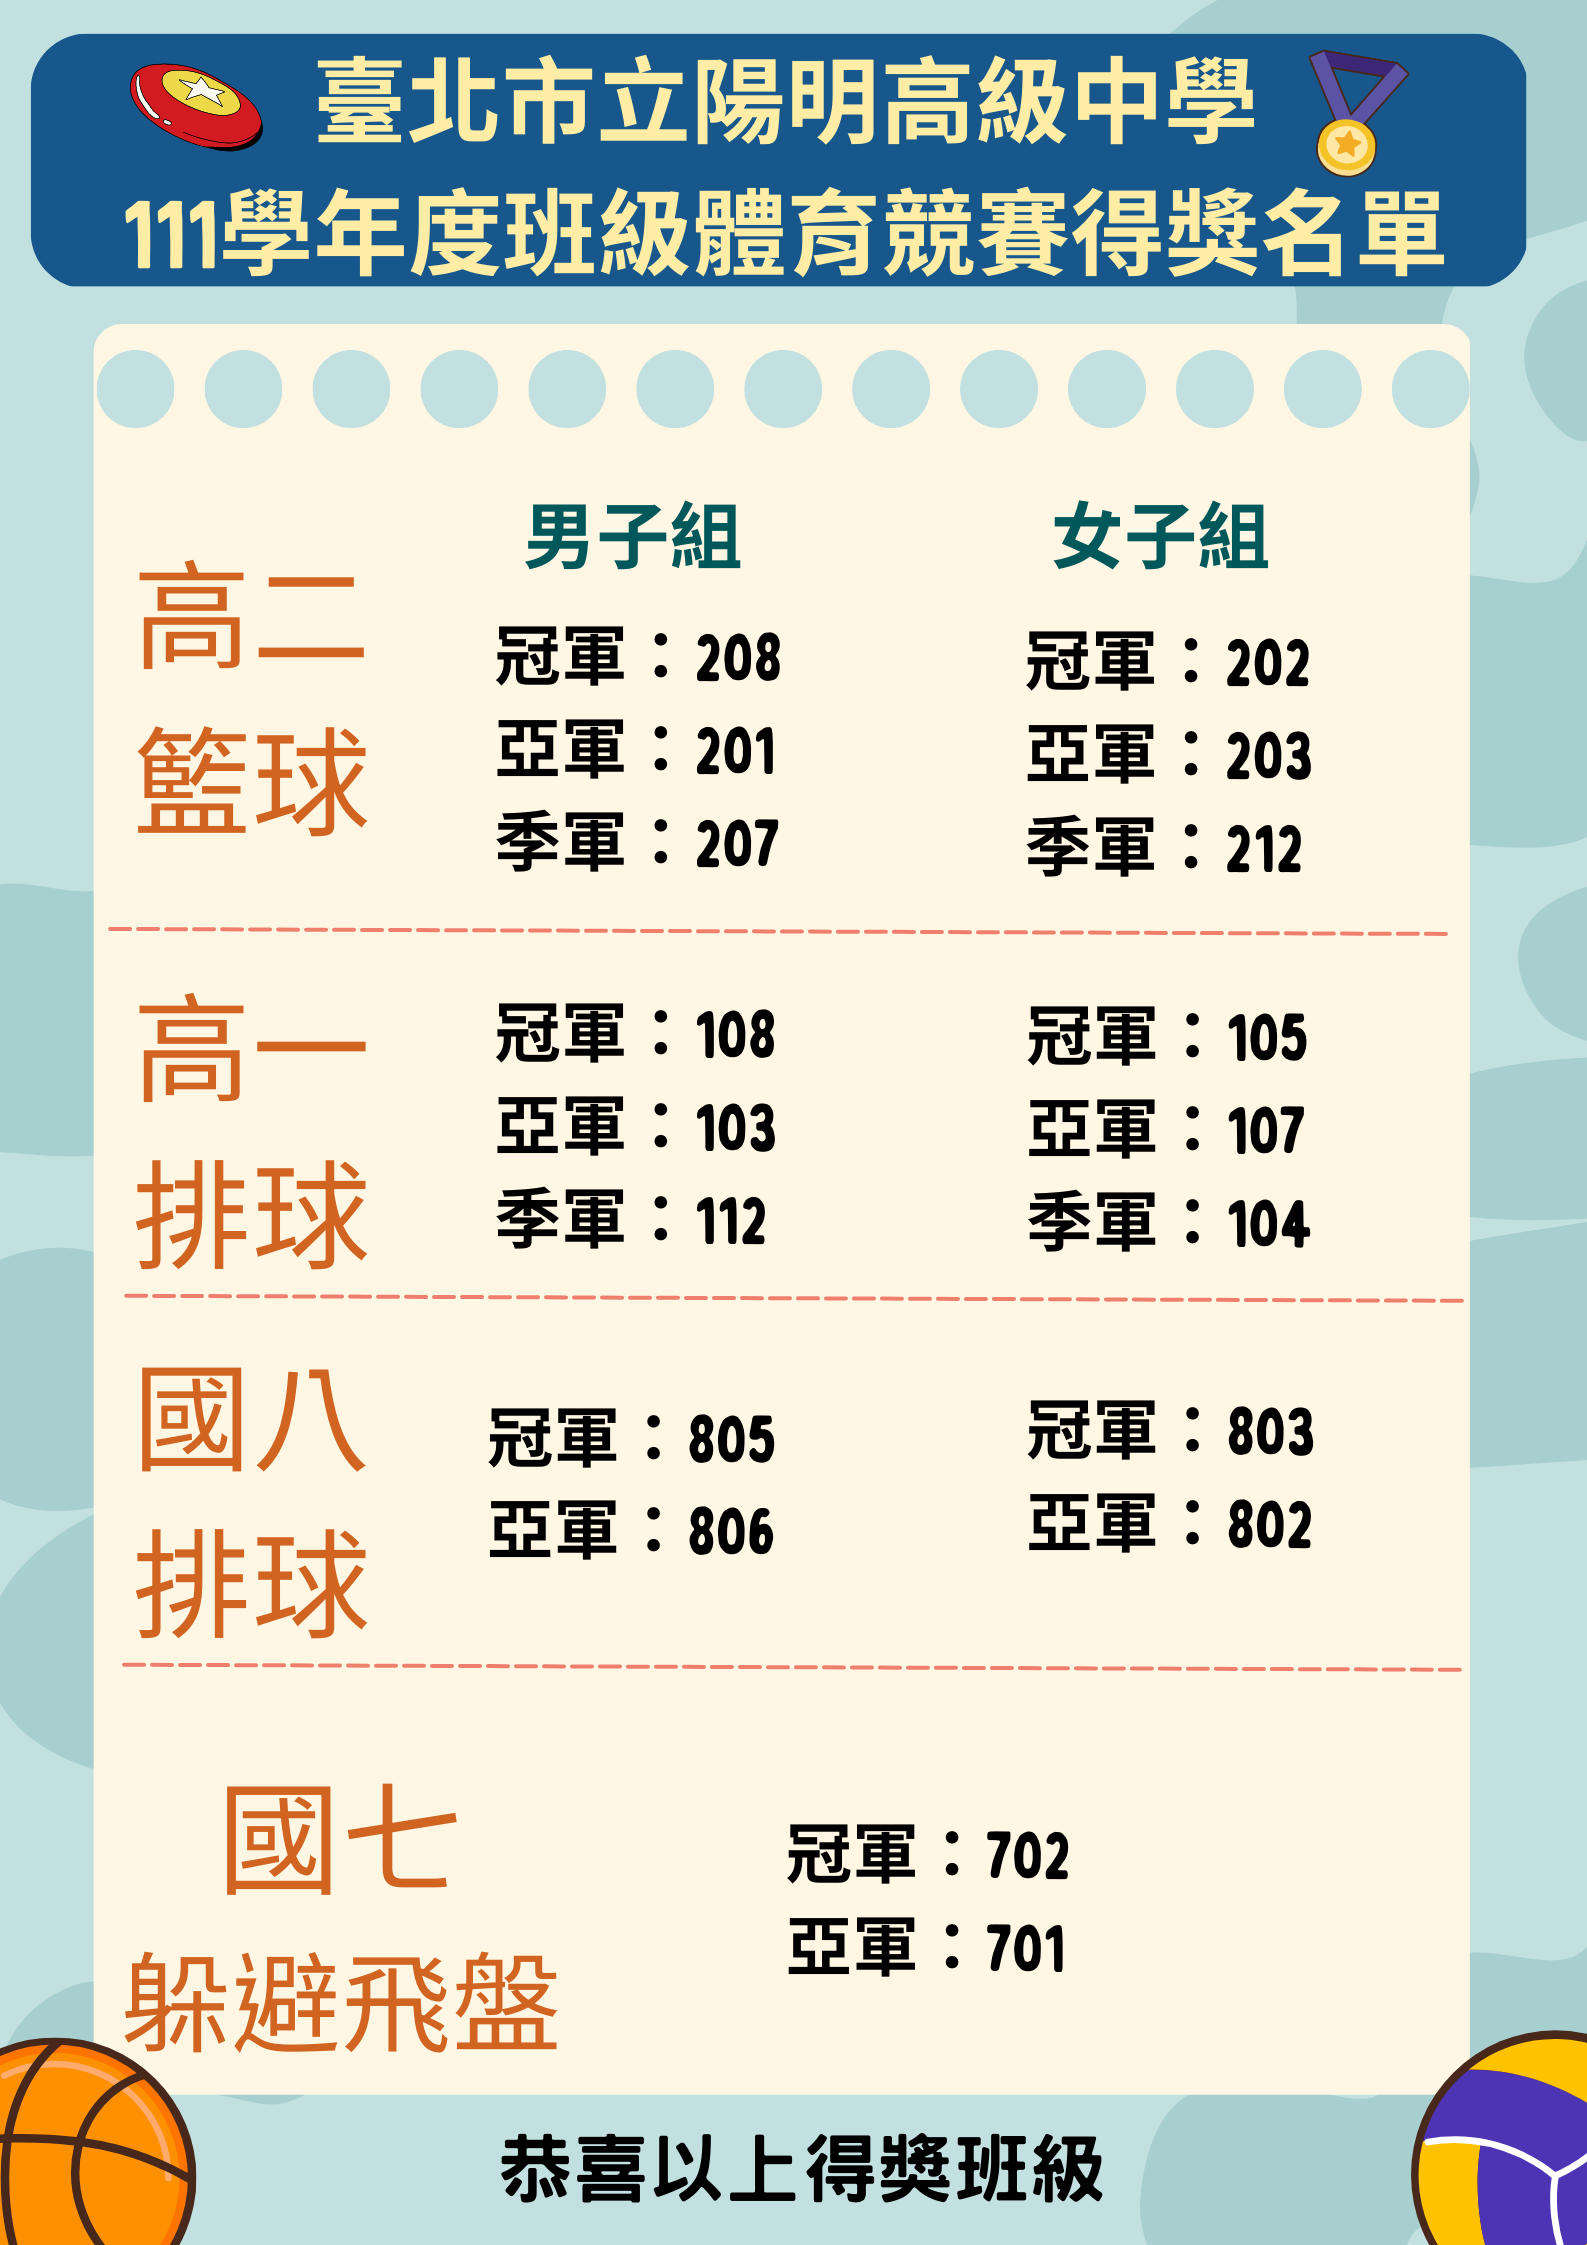 臺北市立陽明高級中學 111學年度班際競賽得獎名單